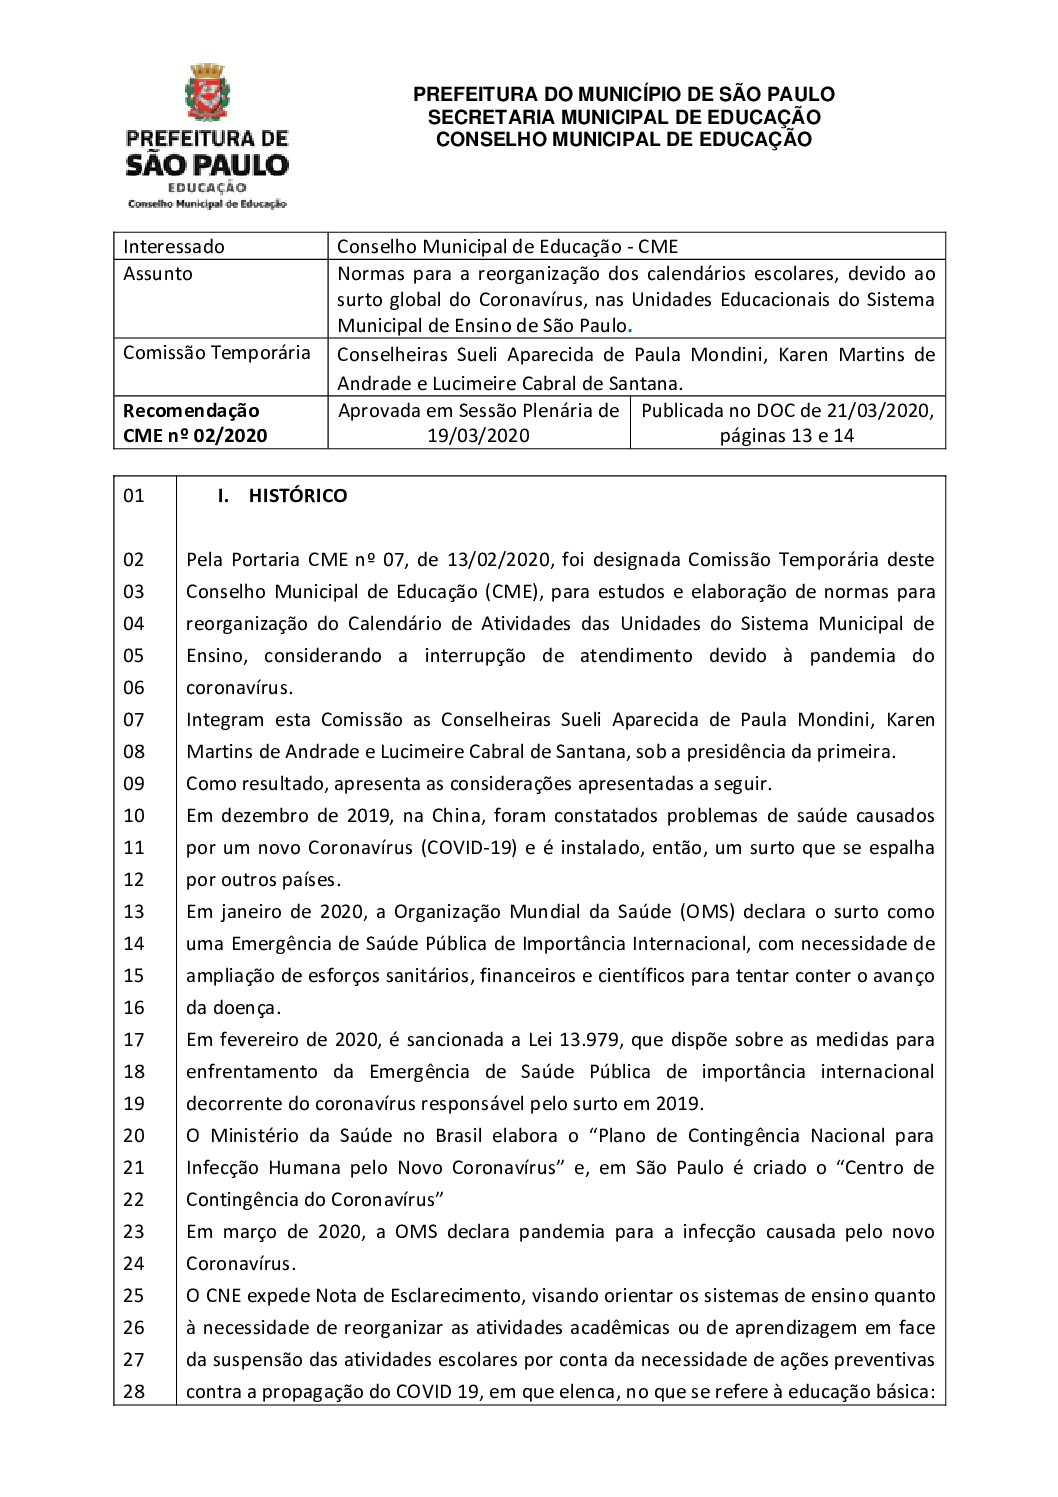 Recomendação CME nº 02/2020 - Normas para a reorganização dos calendários escolares, devido ao surto global do Coronavírus, nas Unidades Educacionais do Sistema Municipal de Ensino de São Paulo